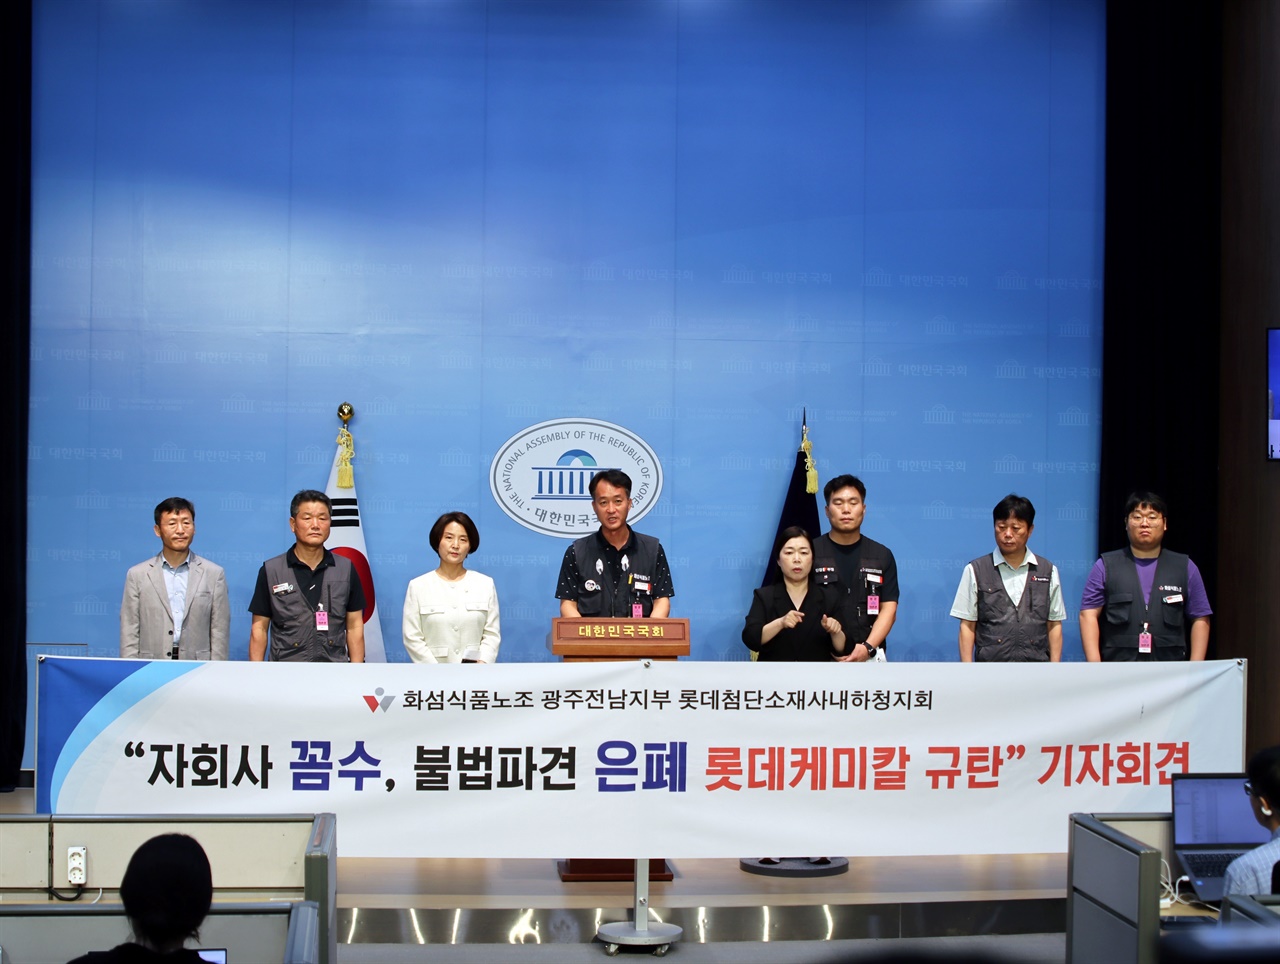 김성호 전국화학섬유식품산업노동조합 광주전남지부 지부장이 사회를 보았다.